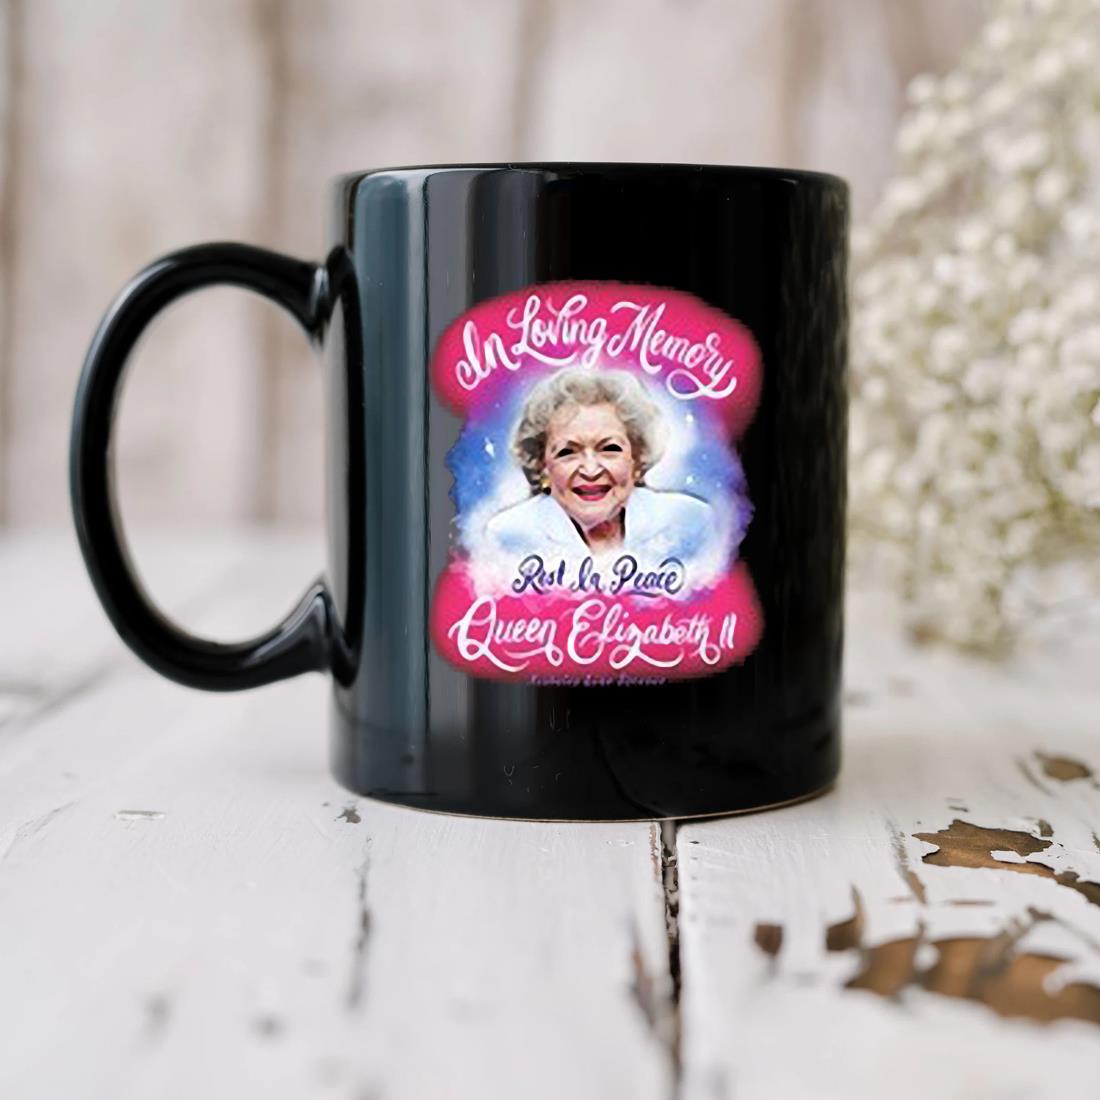 In Loving Memory Rest In Peace Queen Elizabeth Ii Mug biu